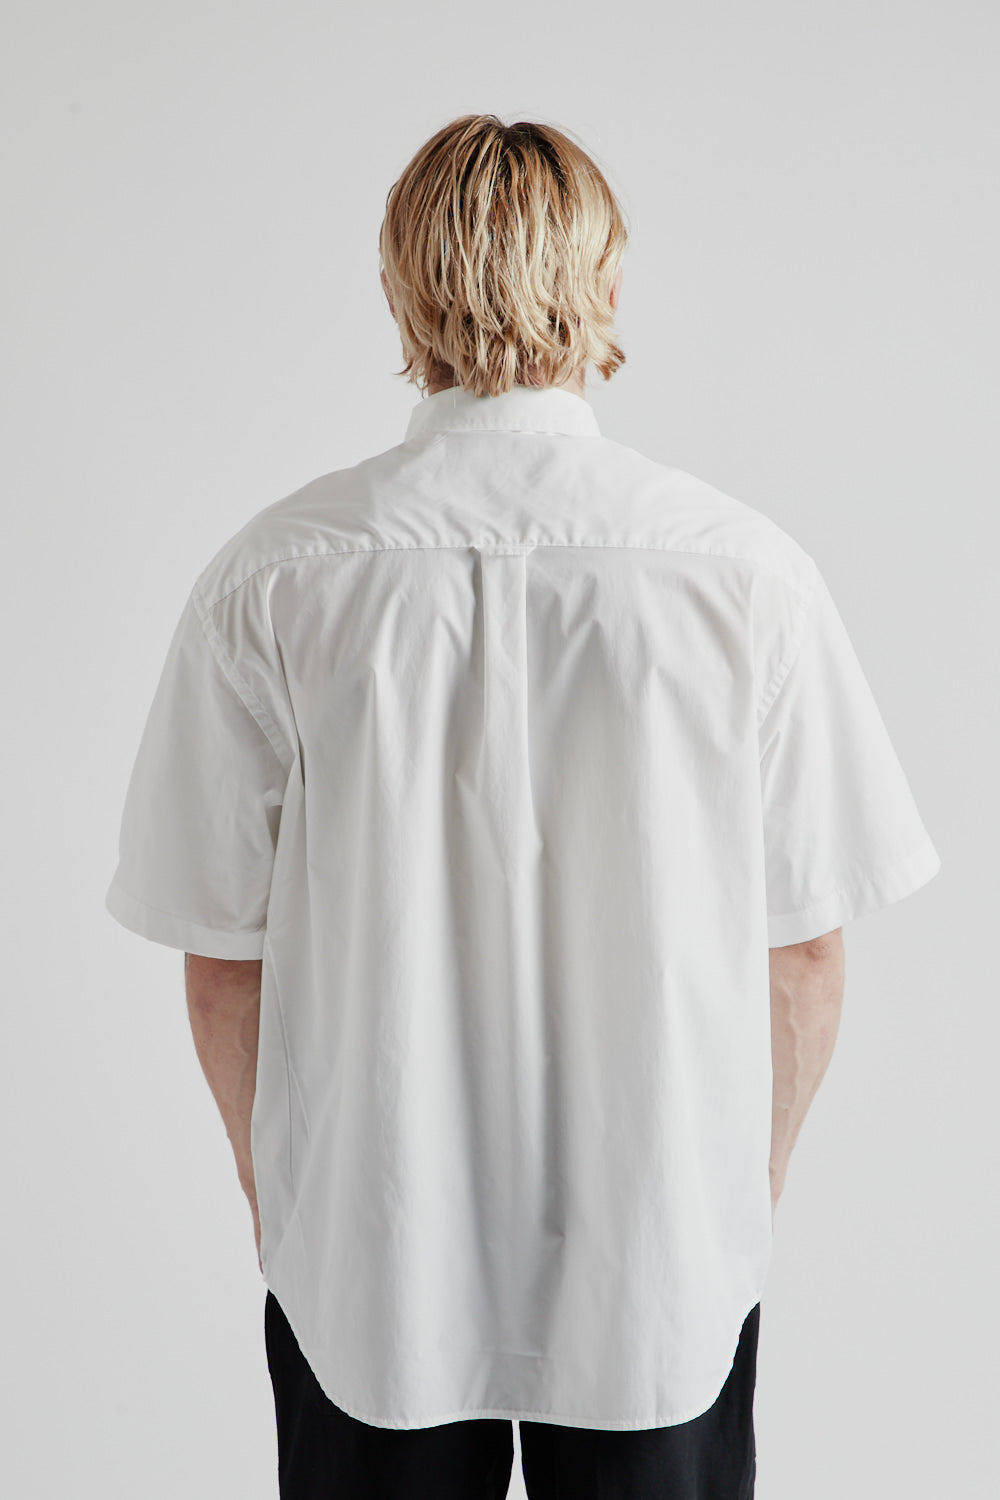 Frizmworks OG Poplin Oversized Shirt in White